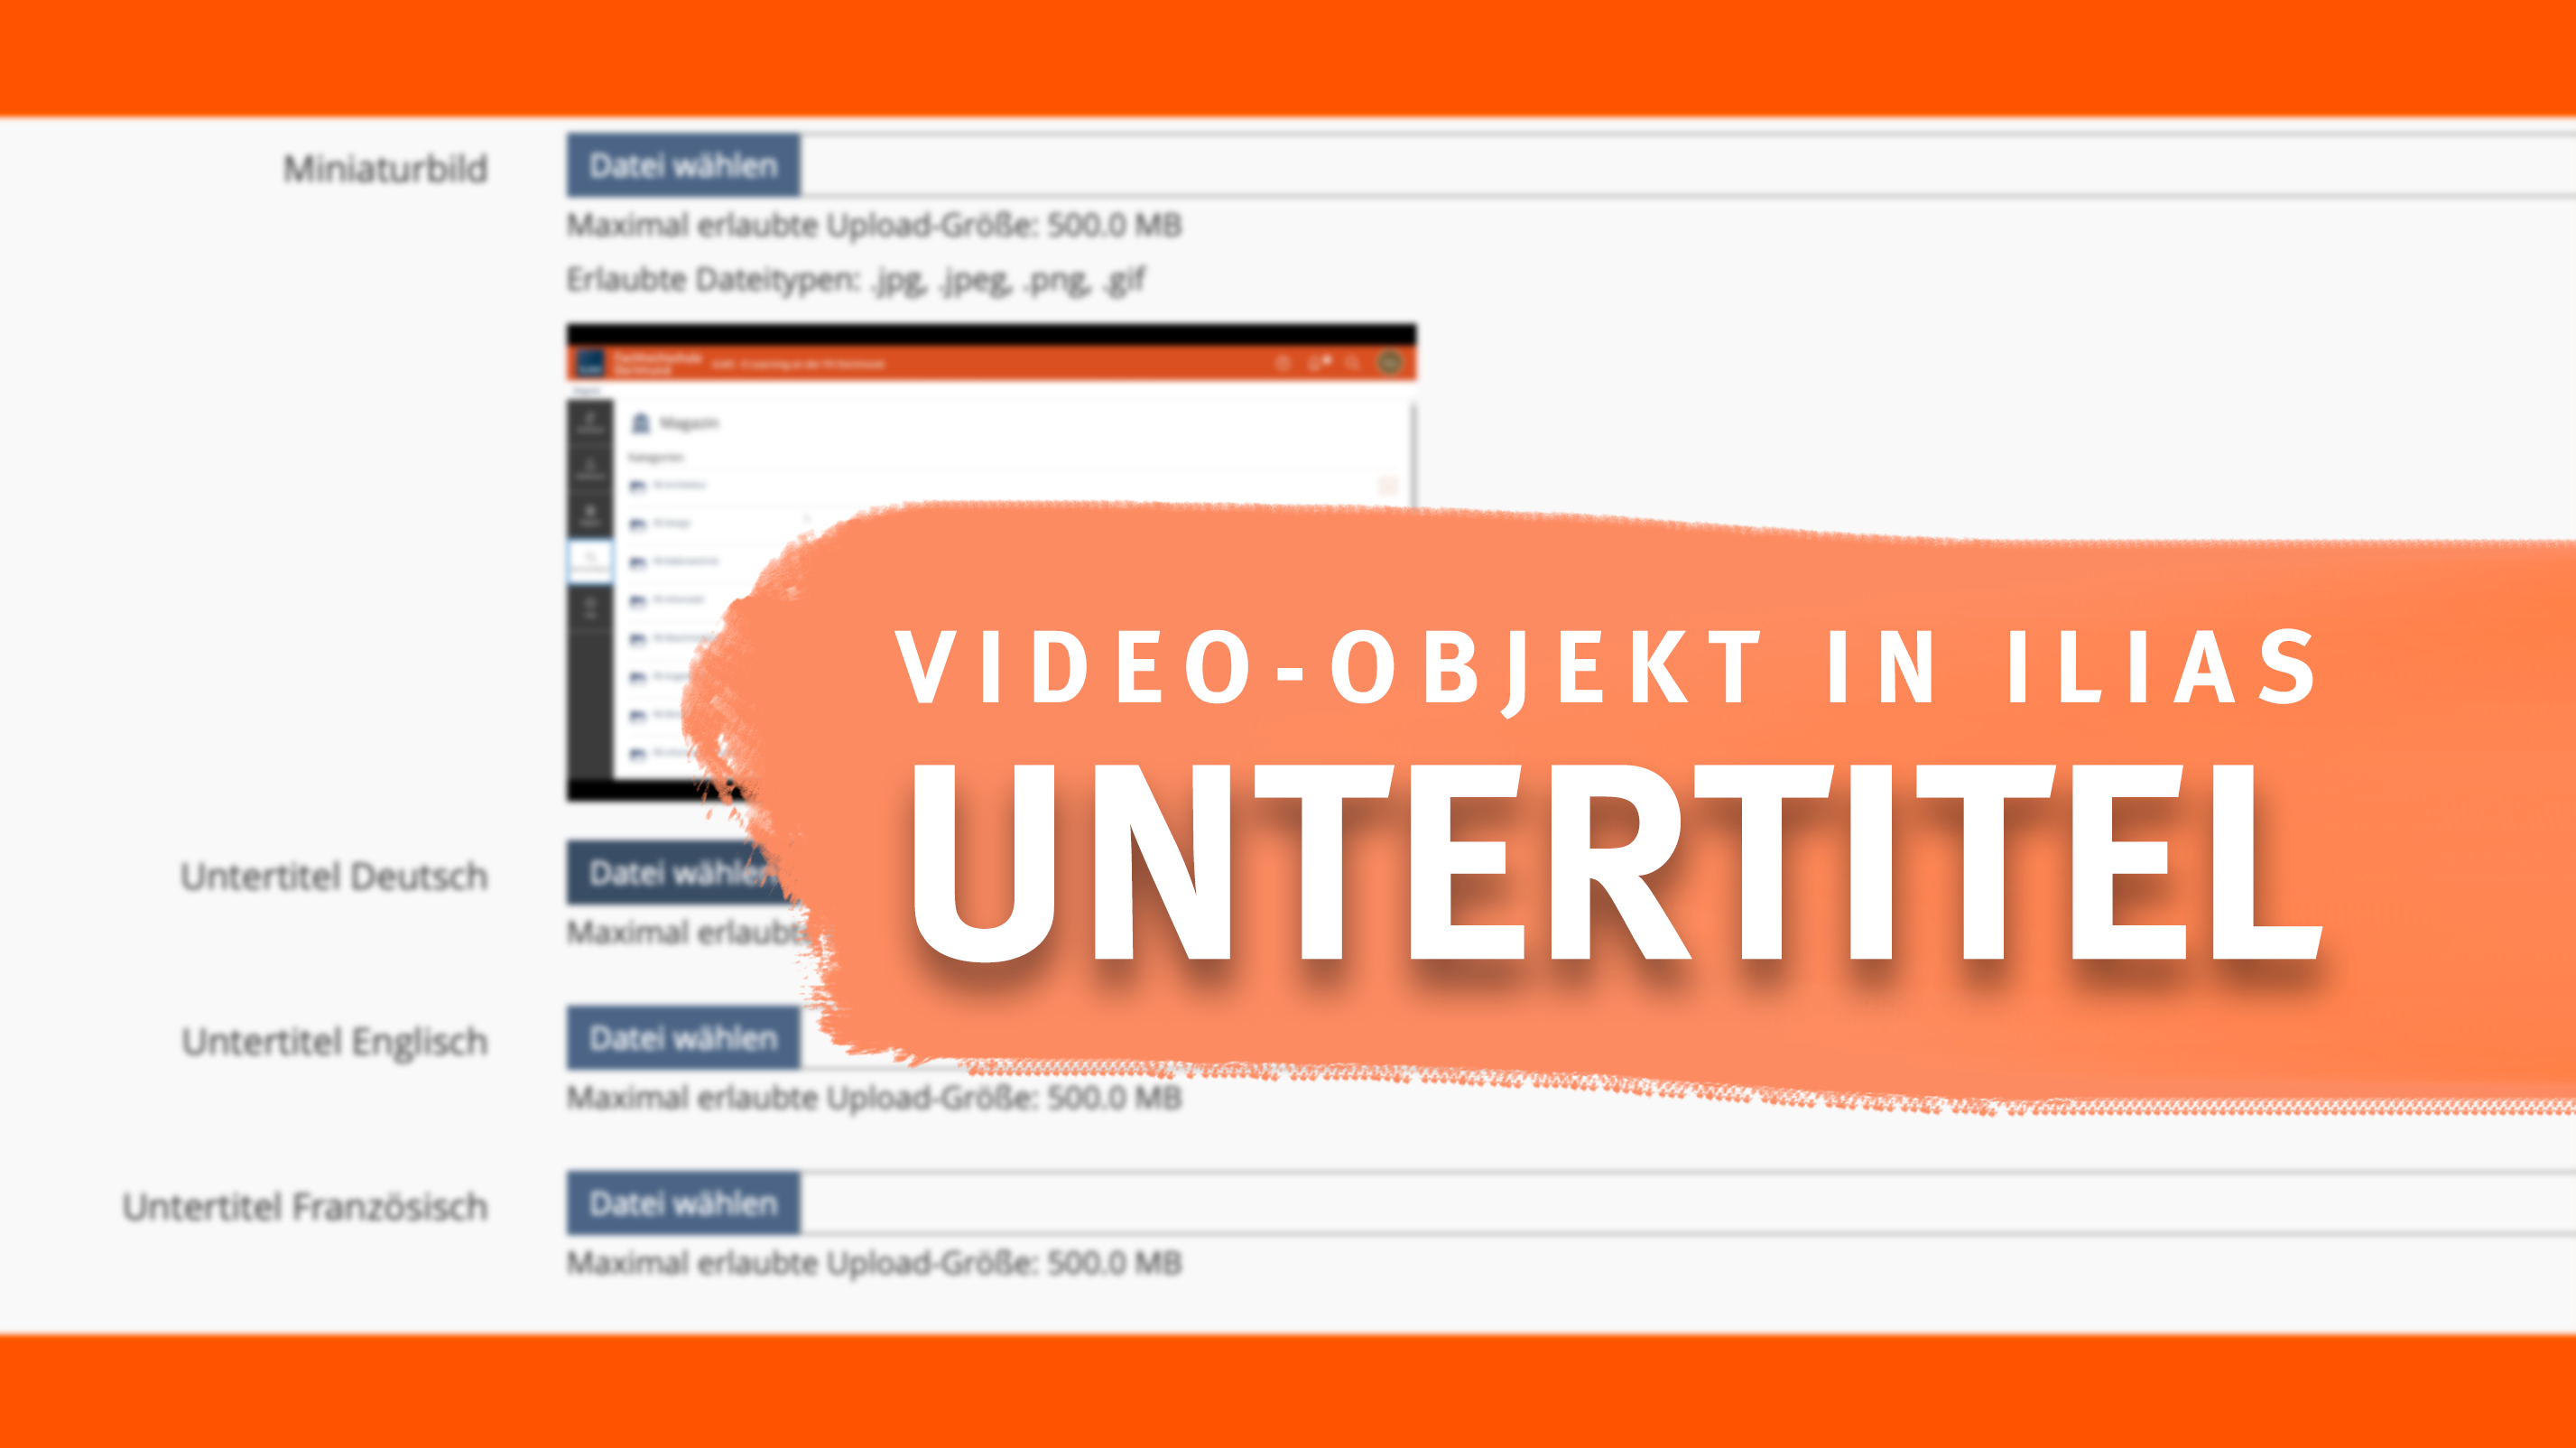 Grafik mit einem unscharfen Screenshot von Untertitel Upload in ILIAS, mit dem Schriftzug "Video-Objekt in ILIAS Untertitel"